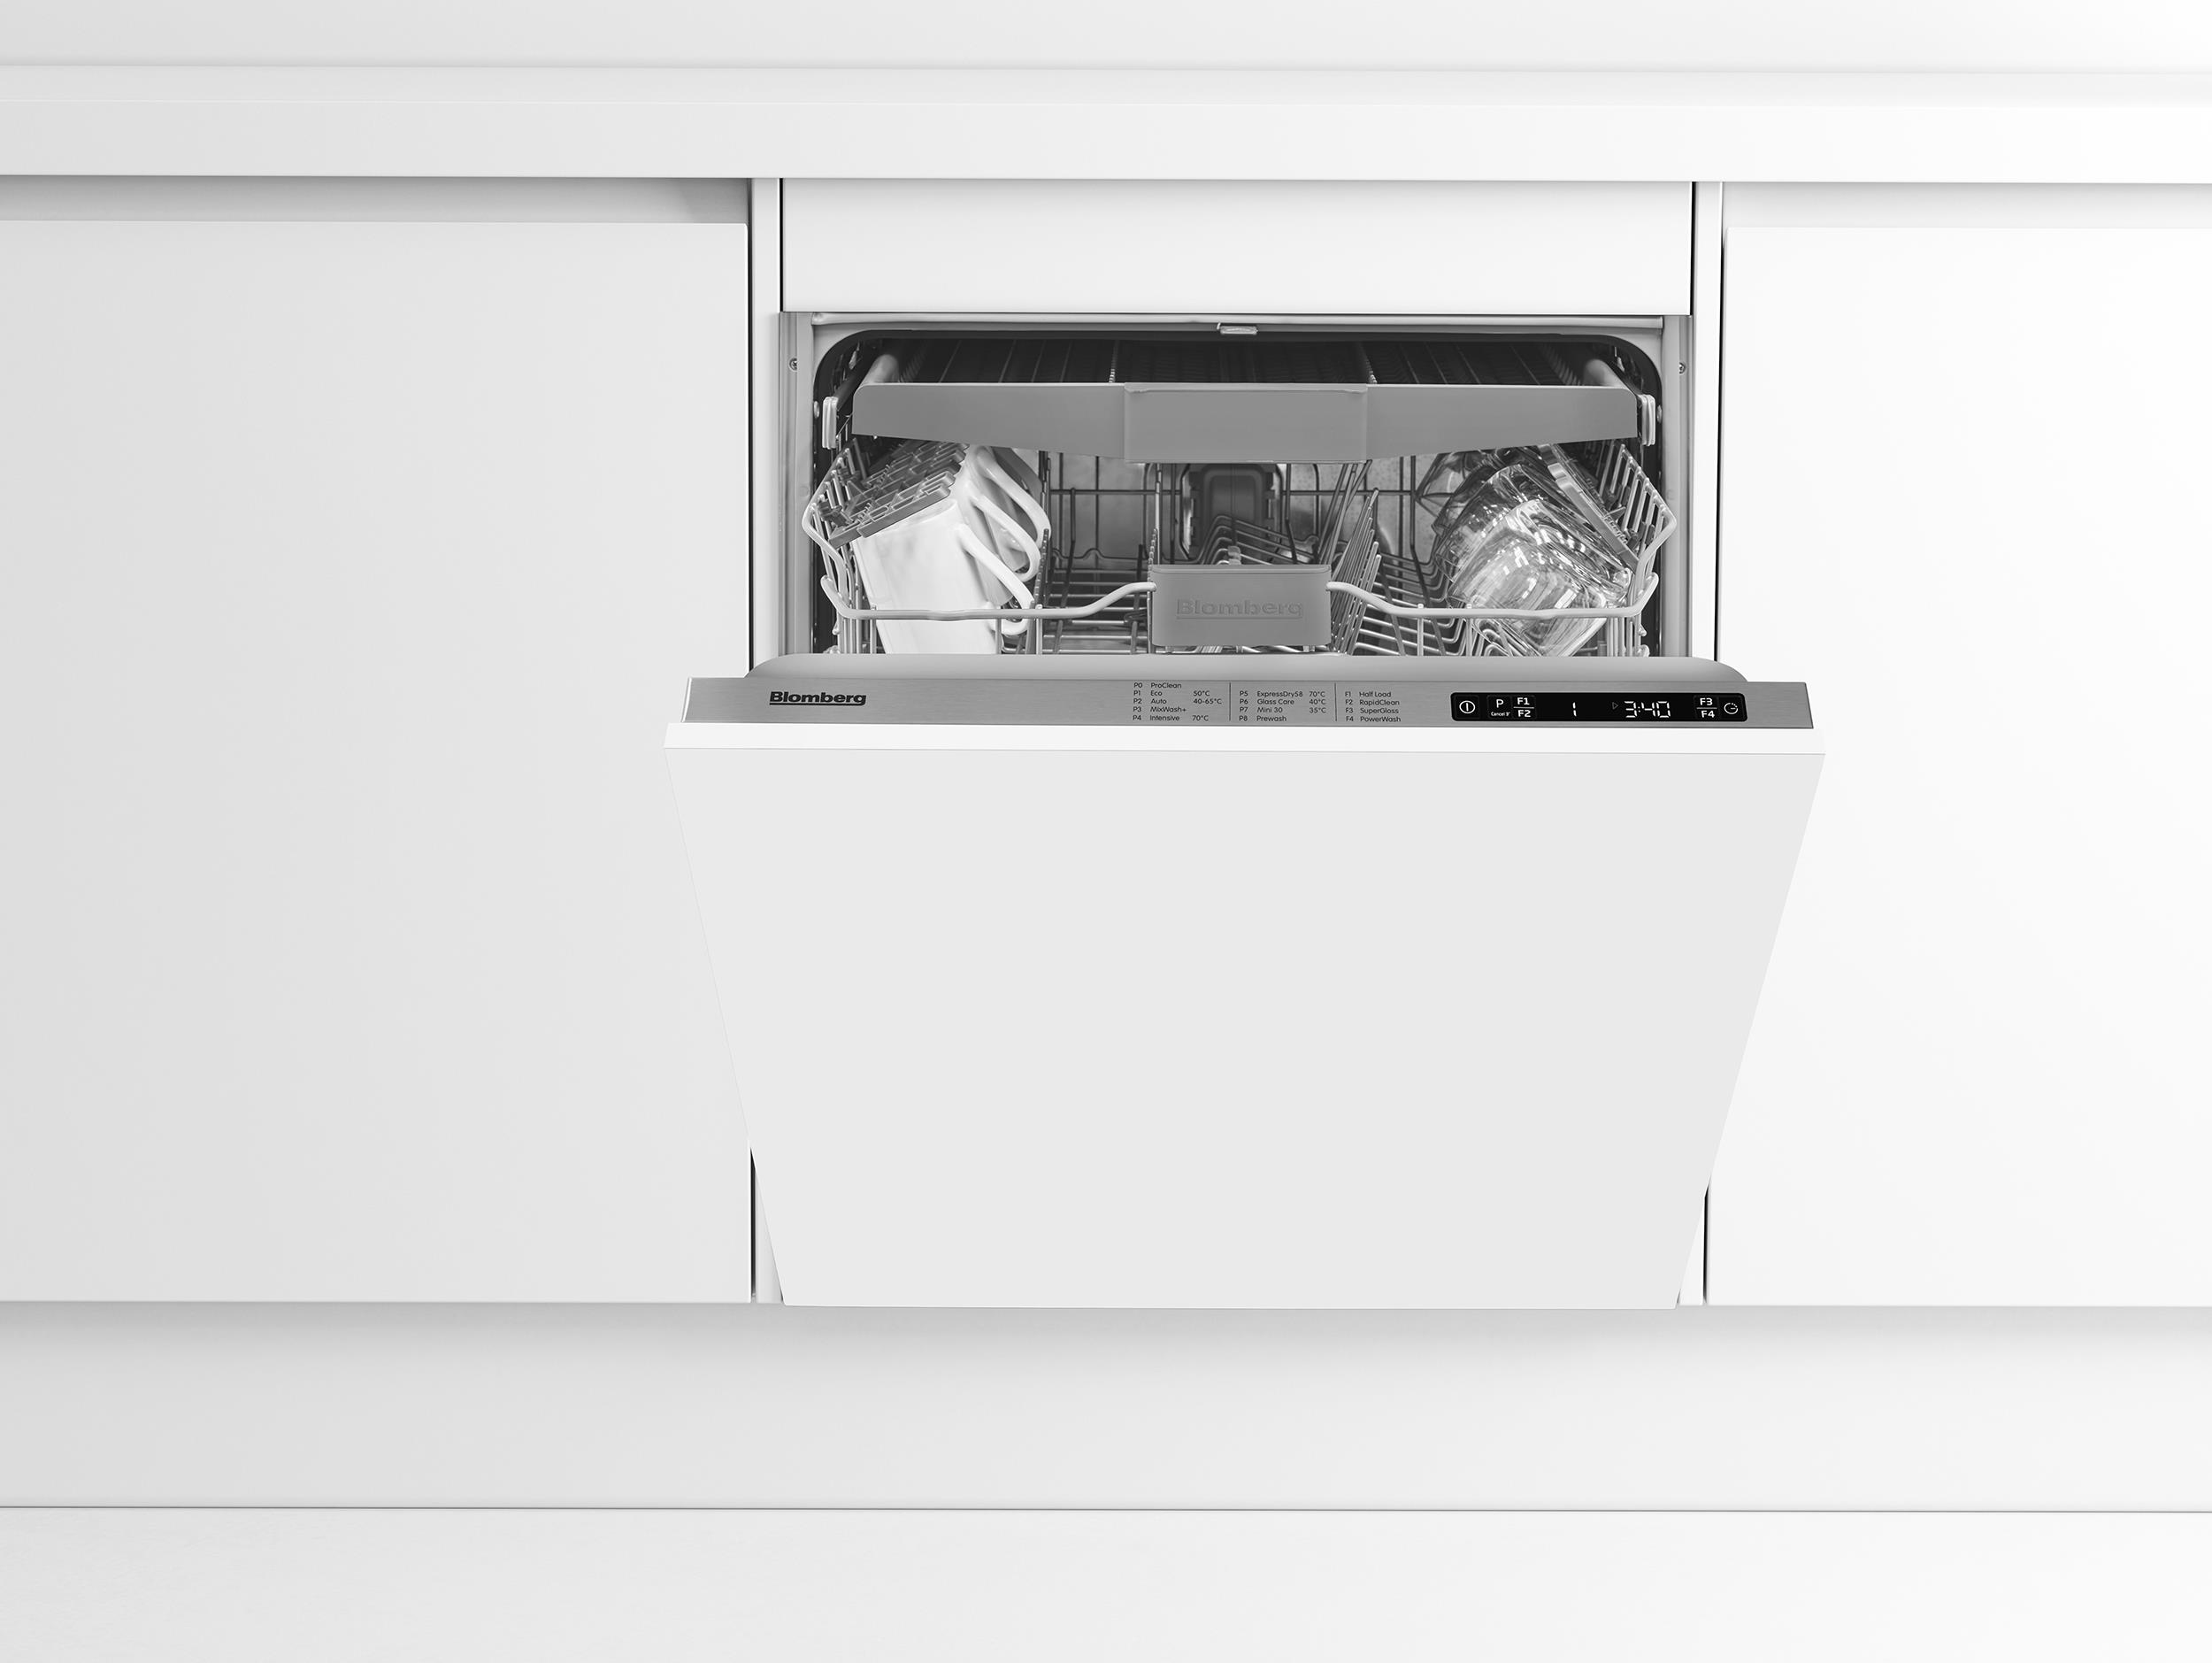 integrated dishwasher deals